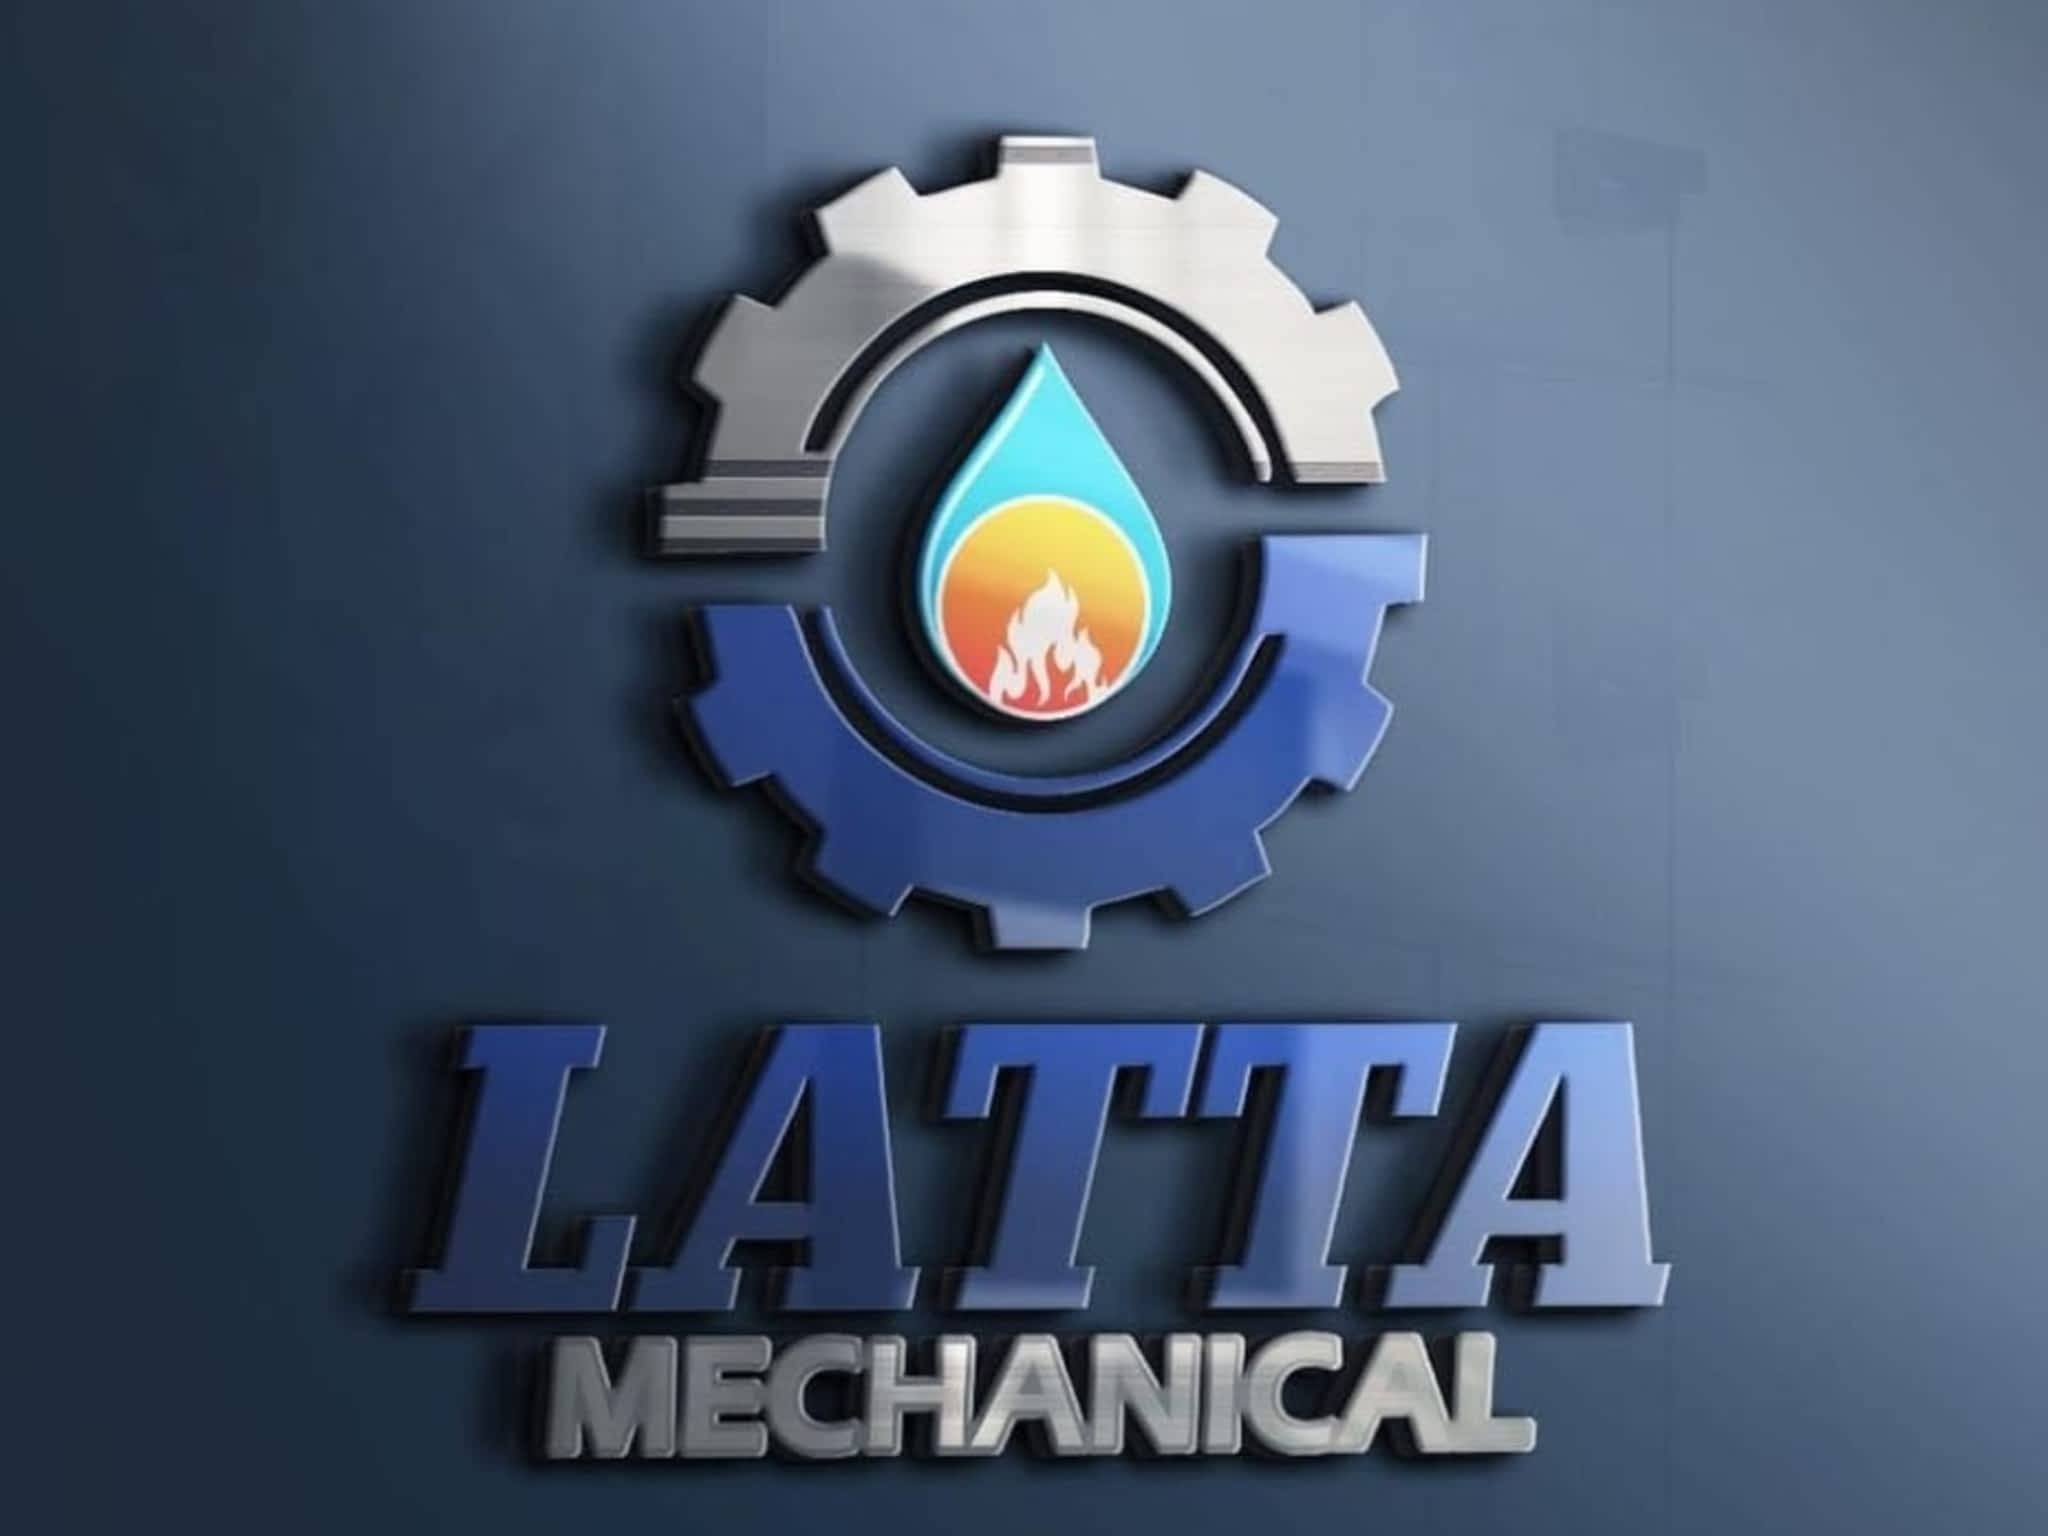 photo Latta Mechanical and Plumbing